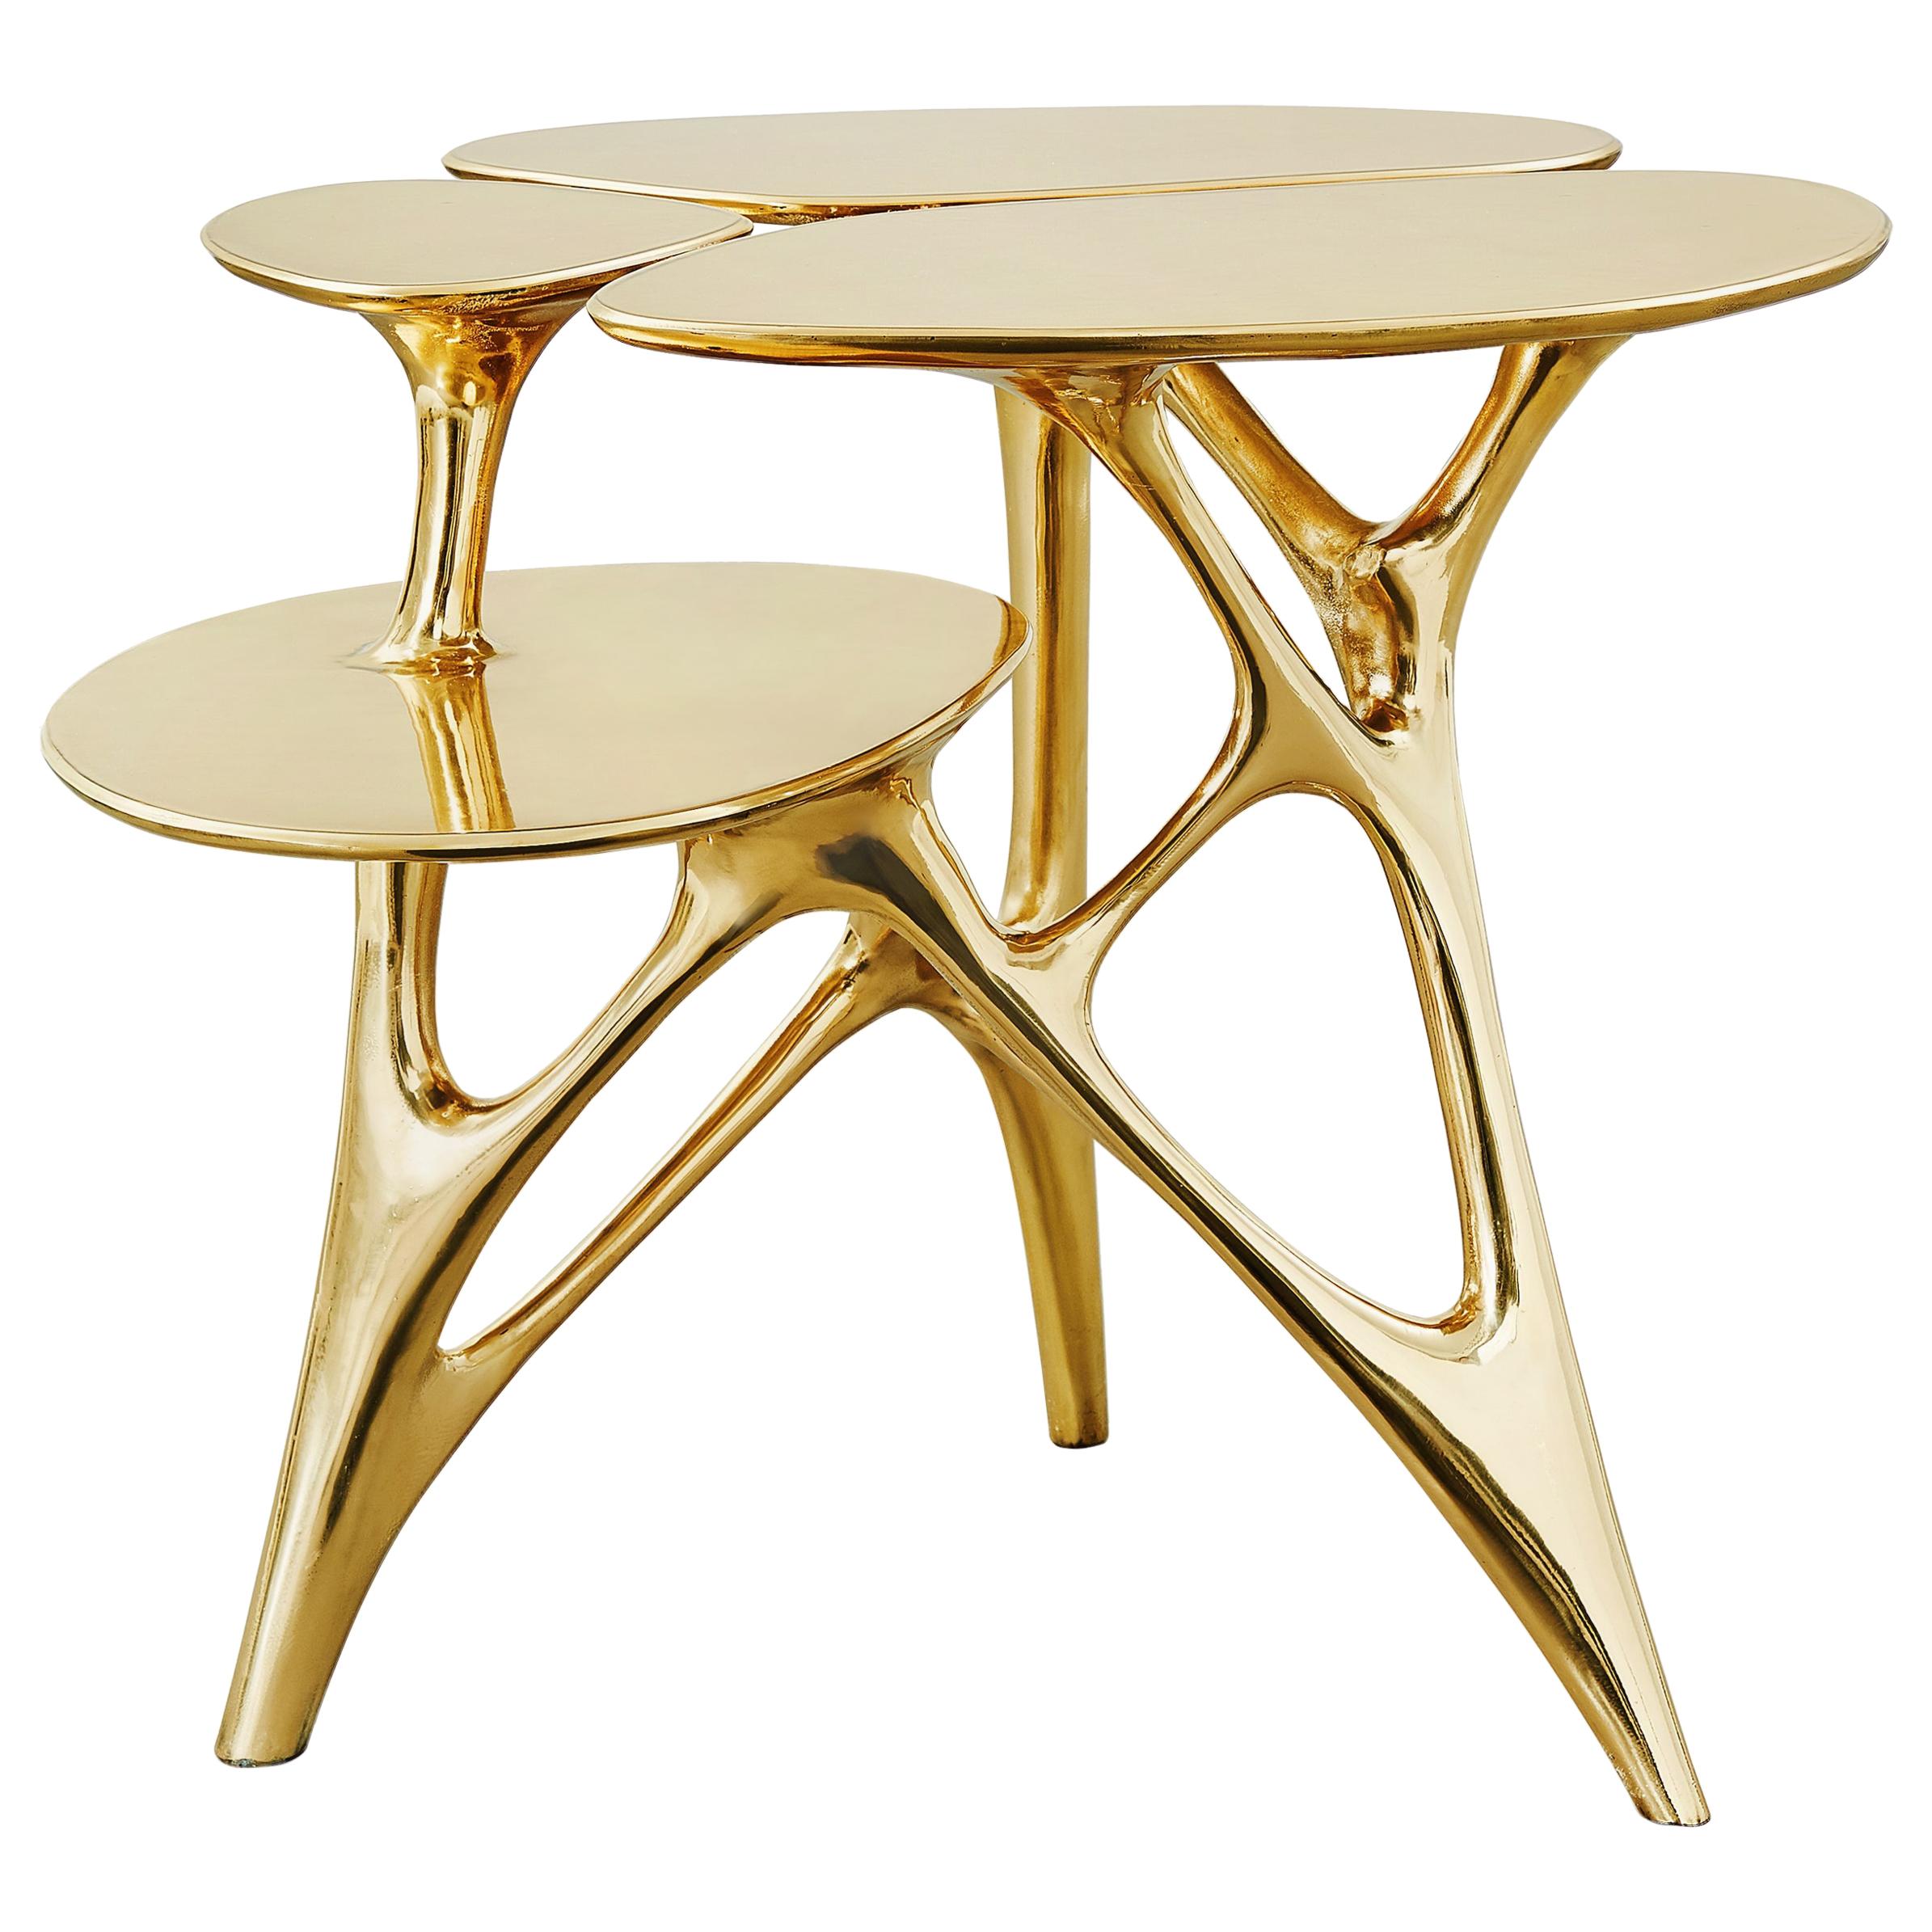 Balance Lotus Side Table and Lotus Coffee Table